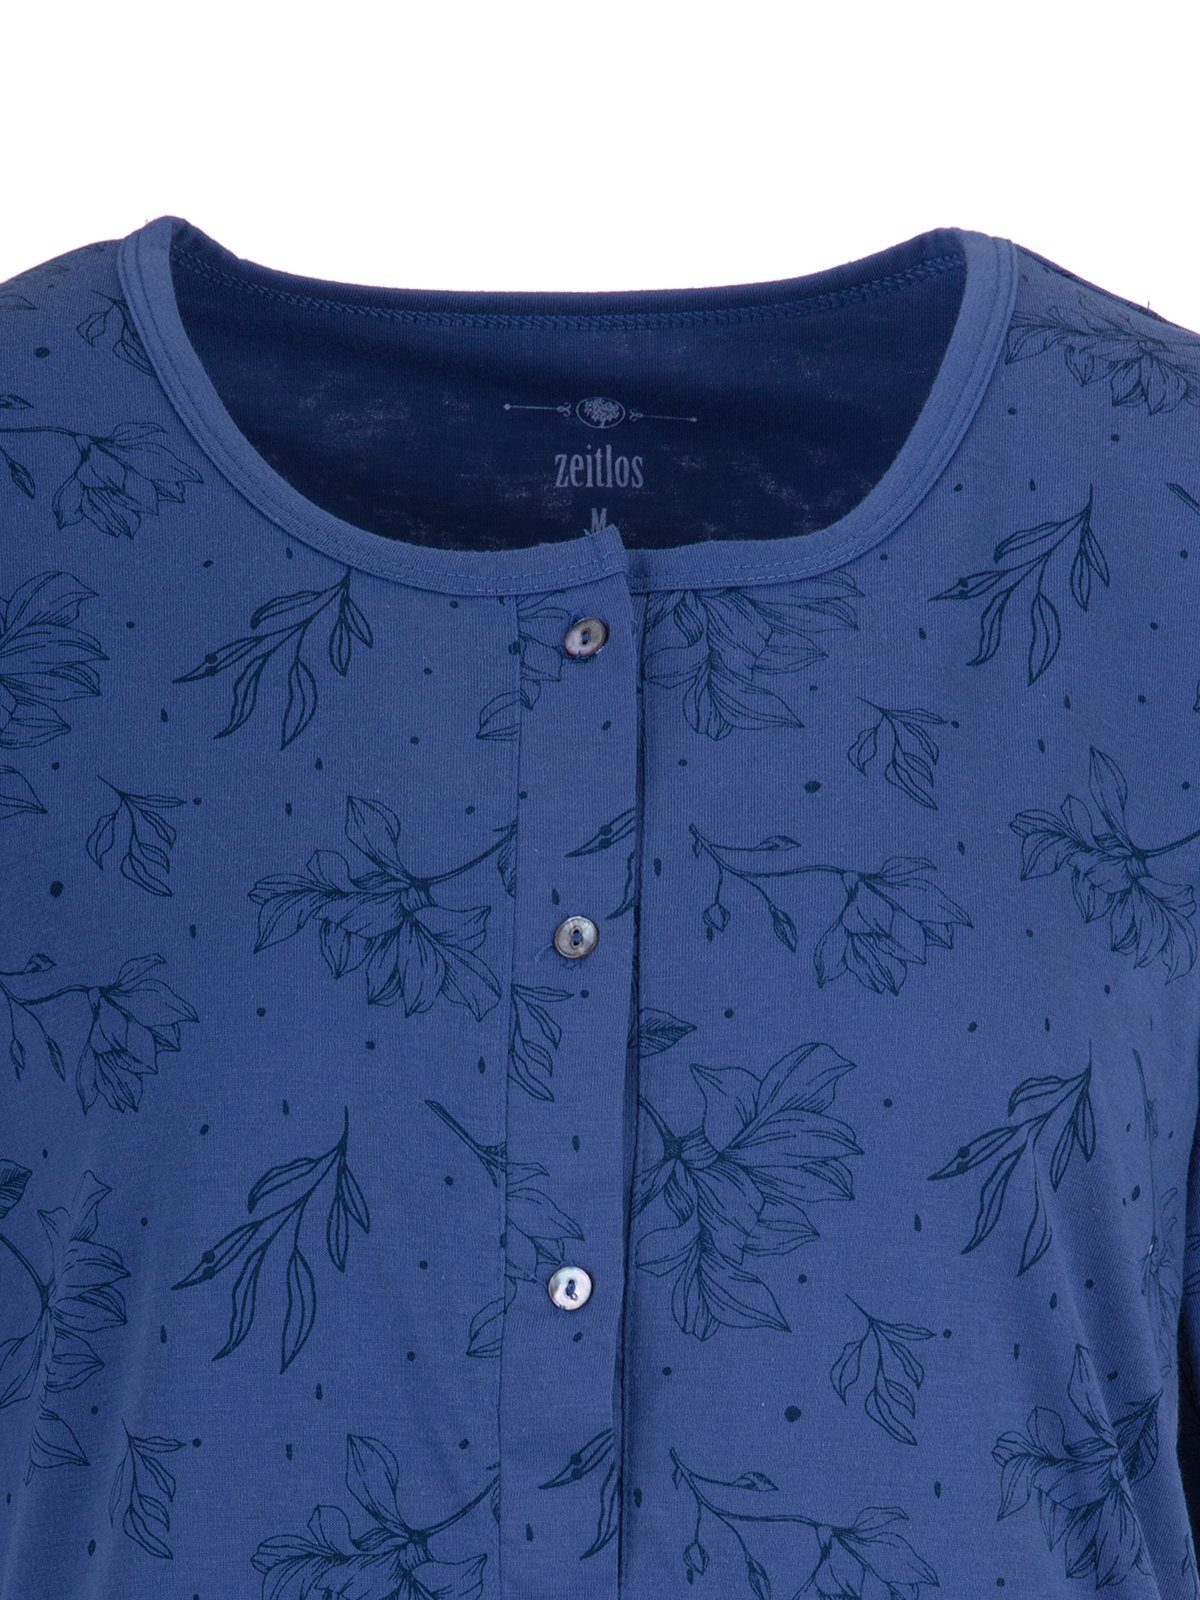 Floral Schlafanzug Kurzarm blau zeitlos Set Pyjama -